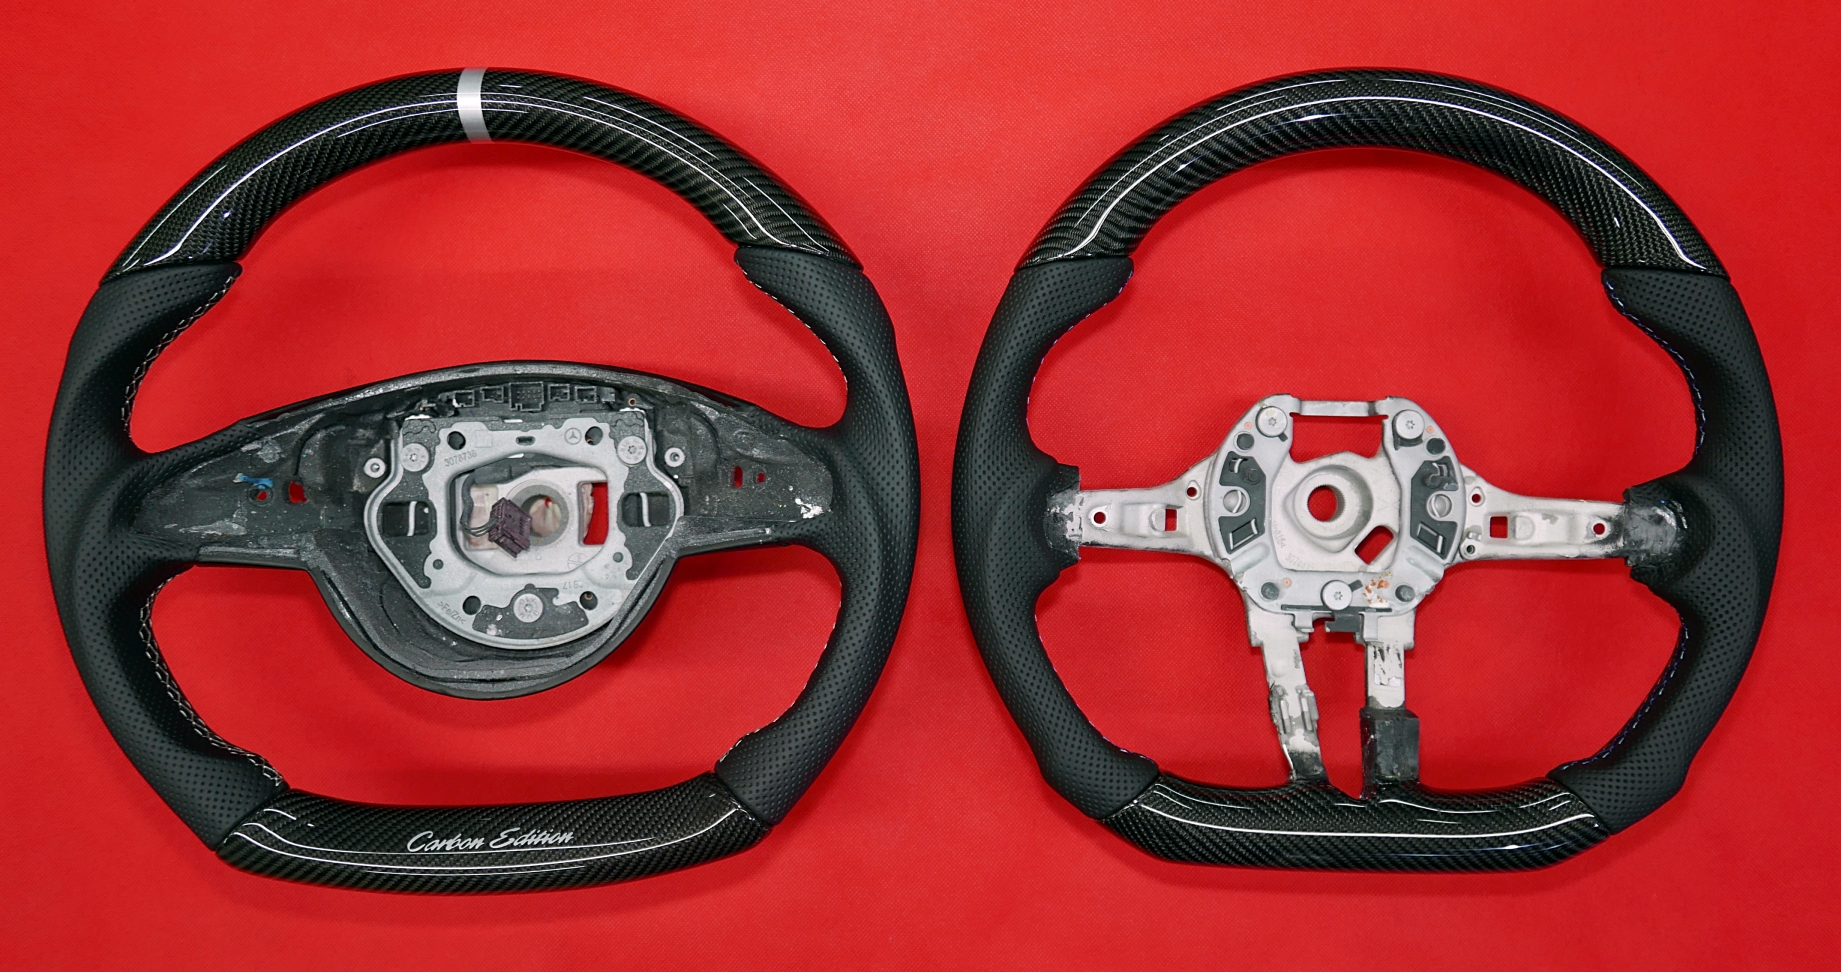 Custom carbon fiber steering wheels